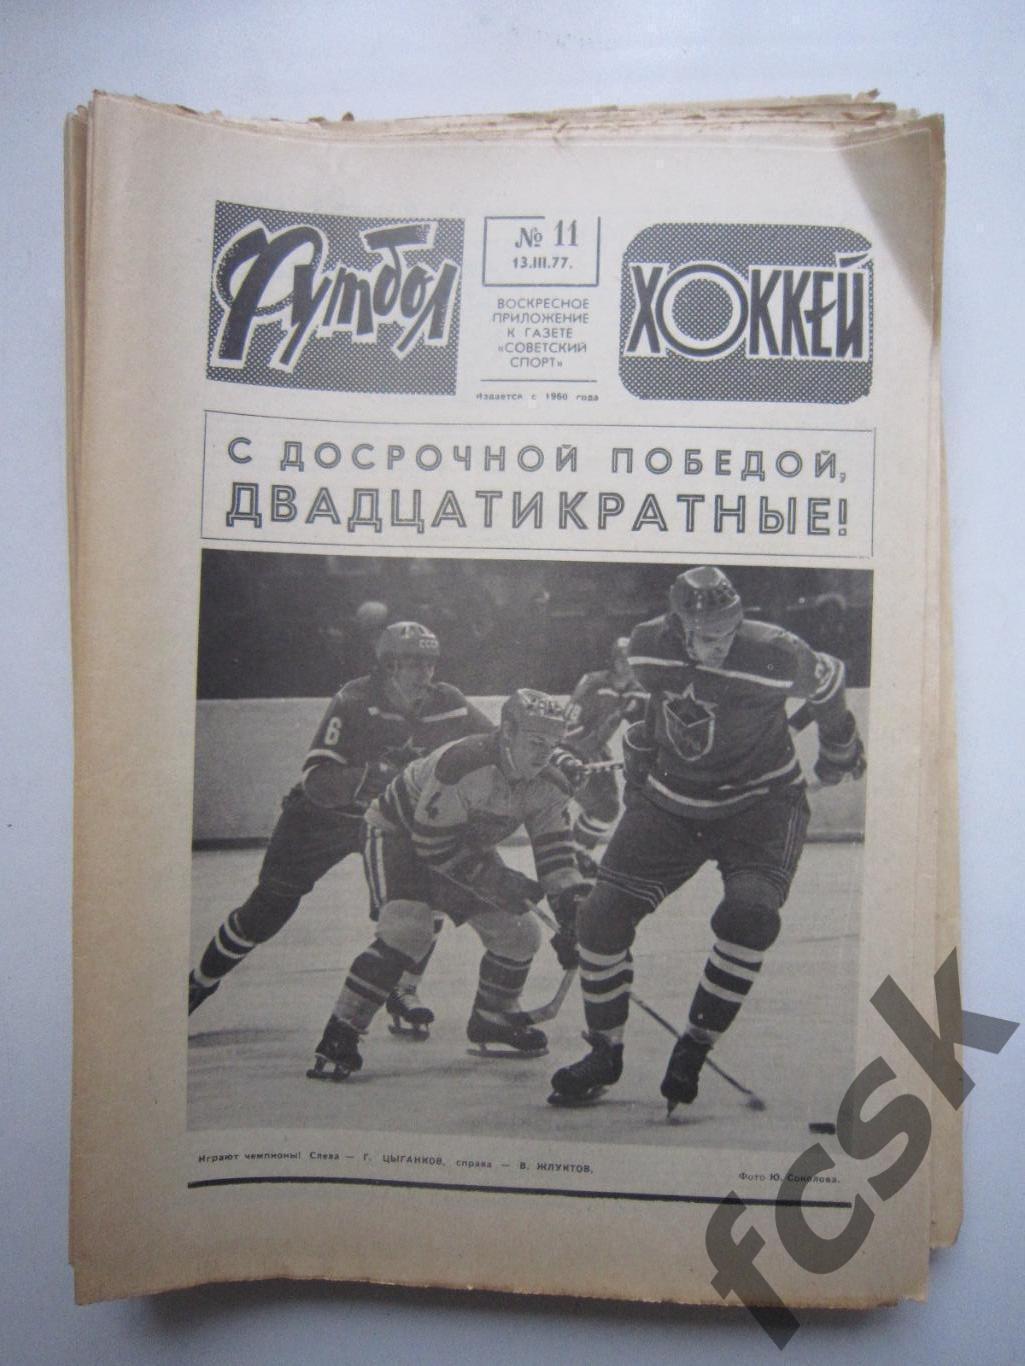 Еженедельник Футбол - Хоккей 1977 25 номеров Московский выпуск!